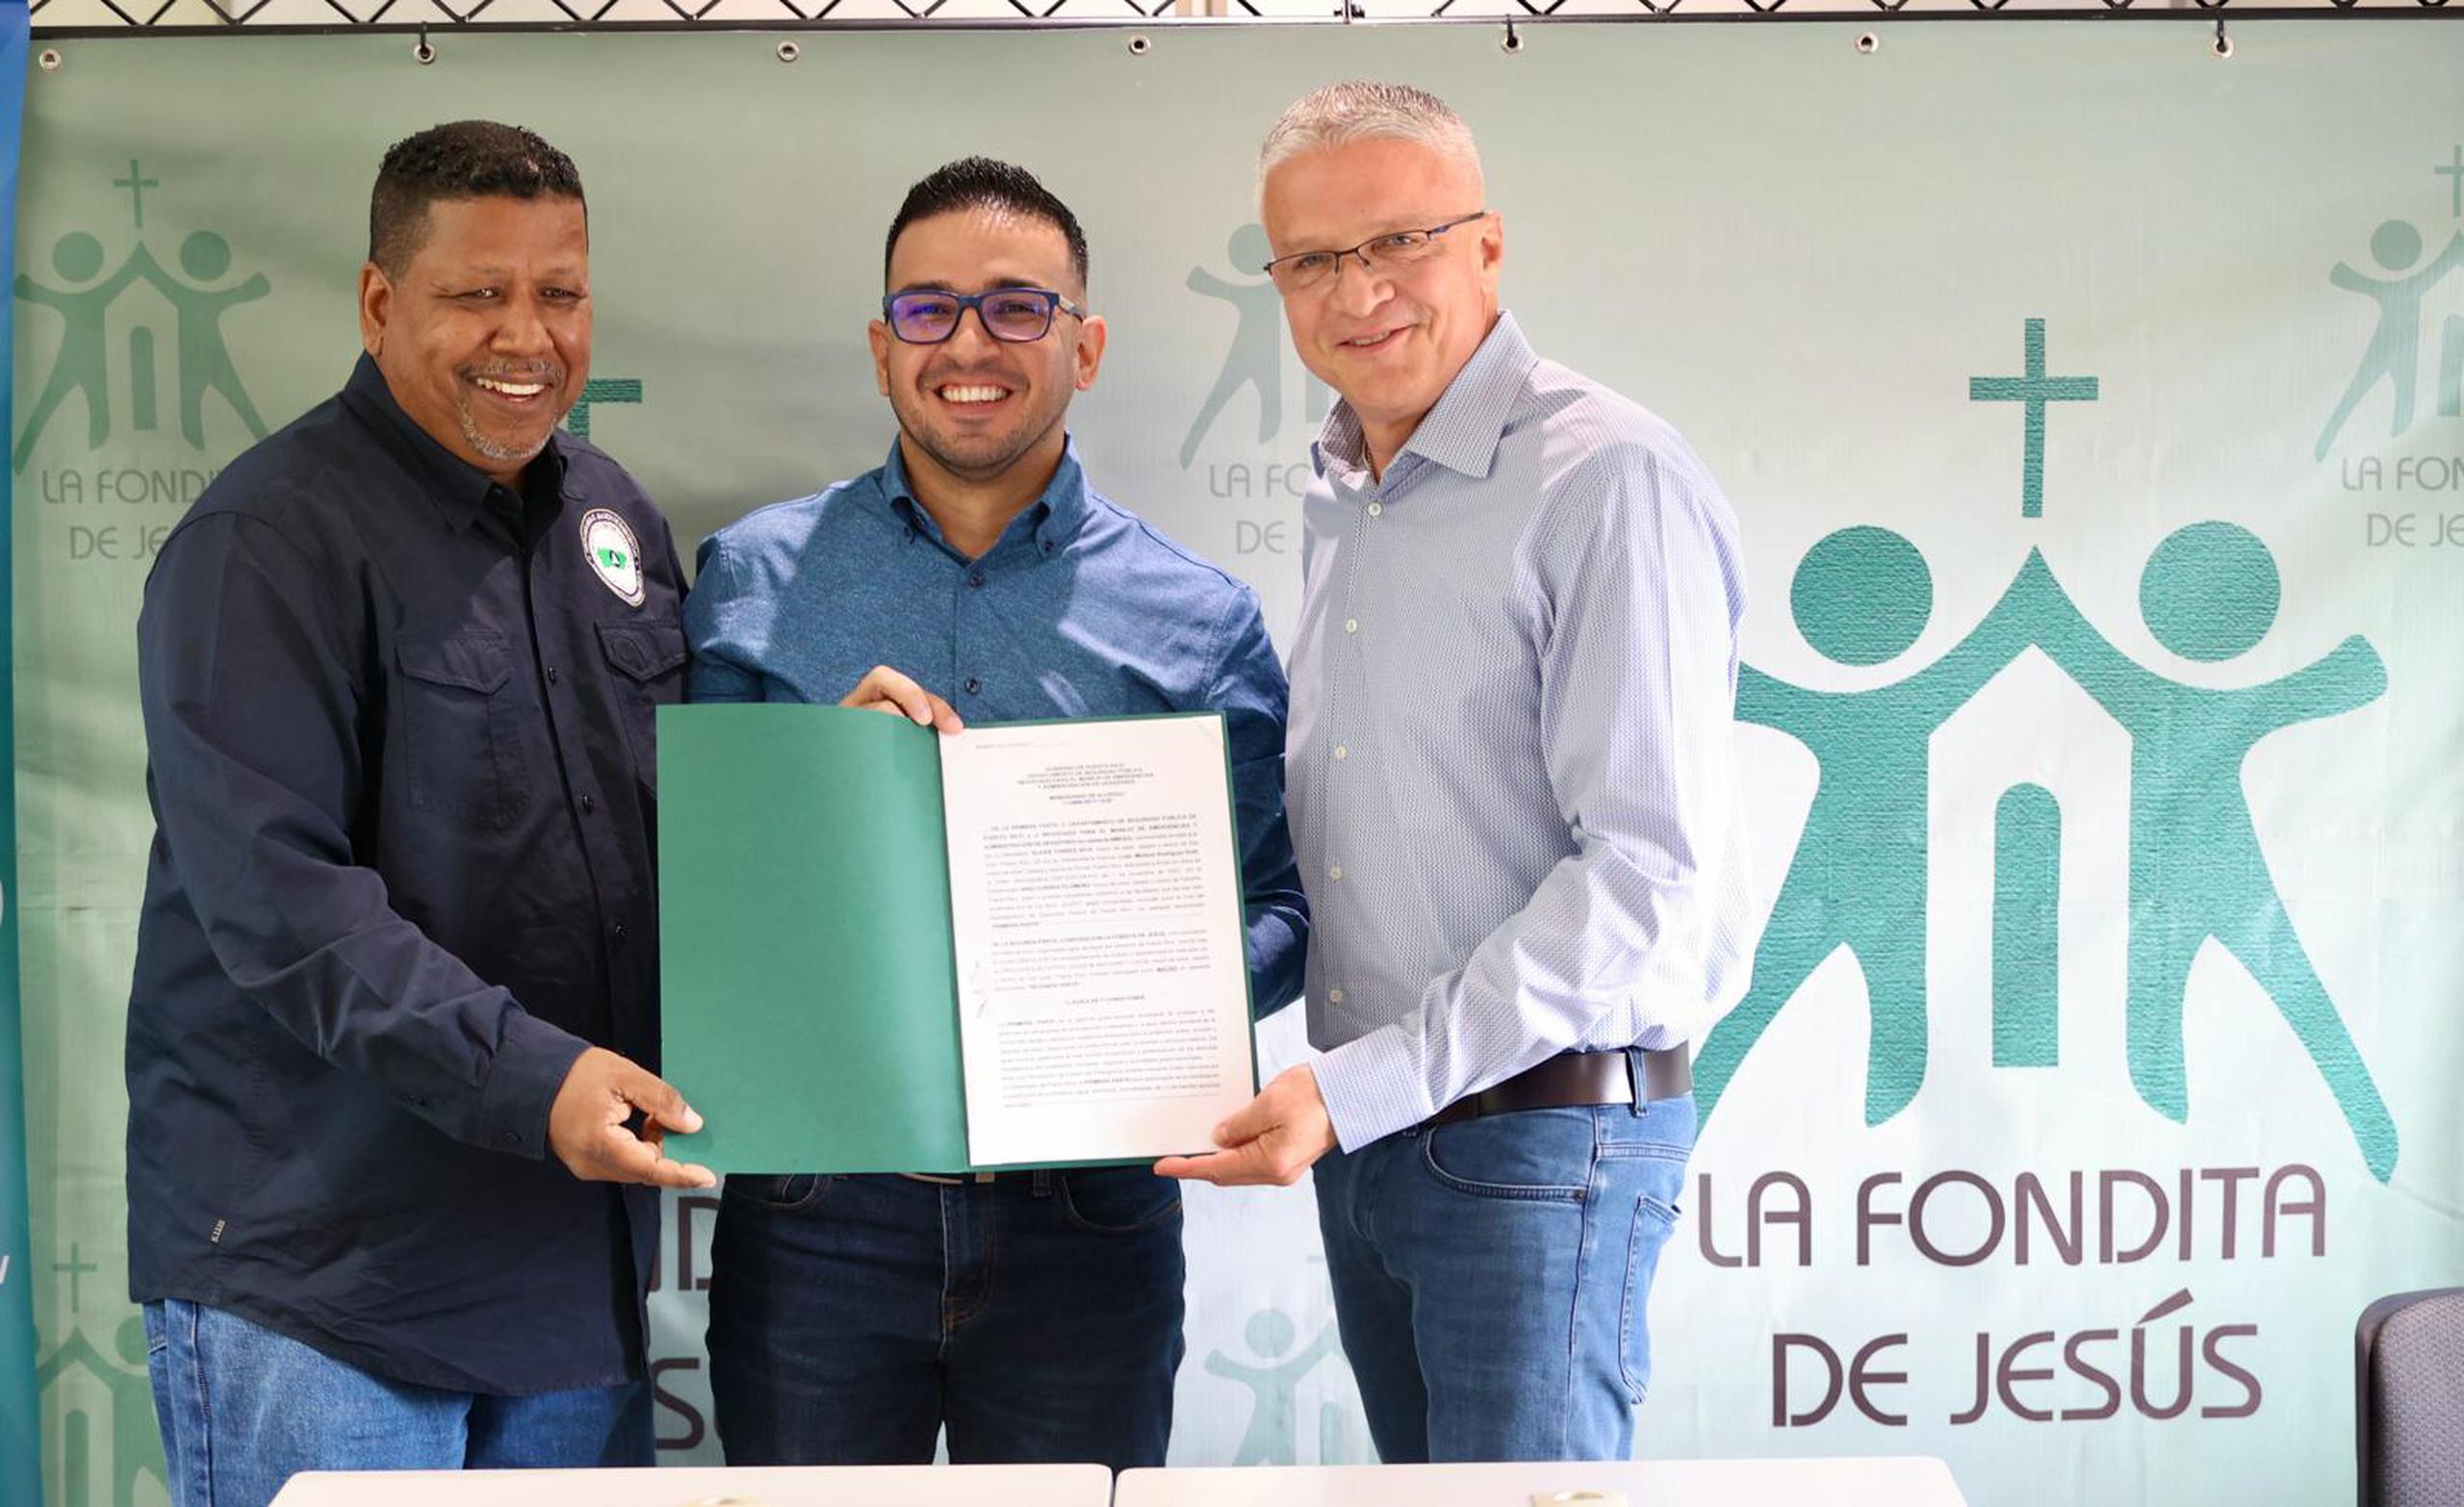 El comisionado de NMEAD, Nino Correa; el director de la Fondita de Jesús, Josué M. Maysonet Colón, y el secretario de Seguridad Pública, Alexis Torres, muestran el acuerdo firmado.